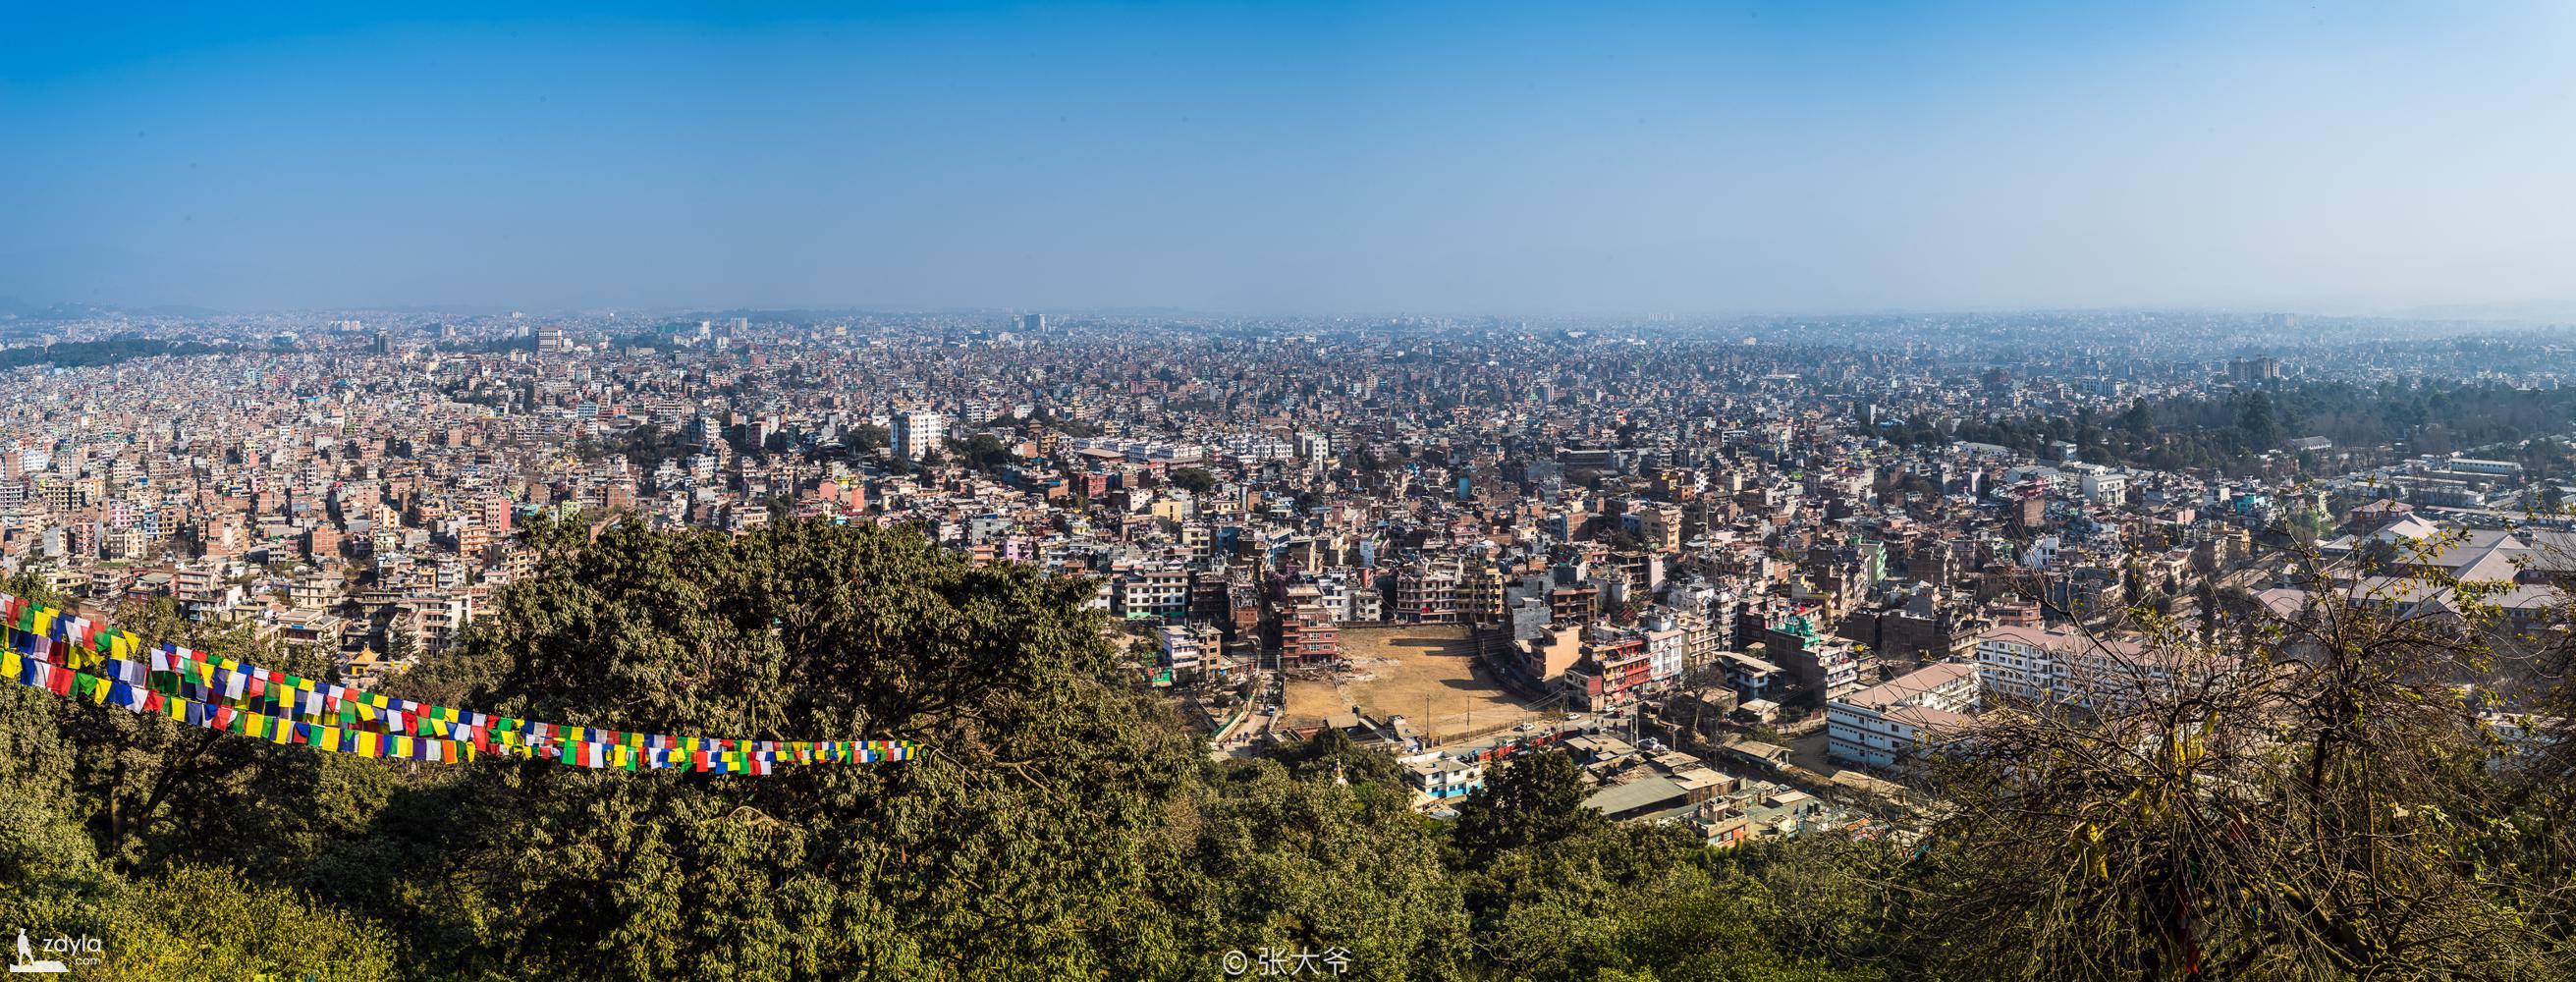 Overlooking Kathmandu